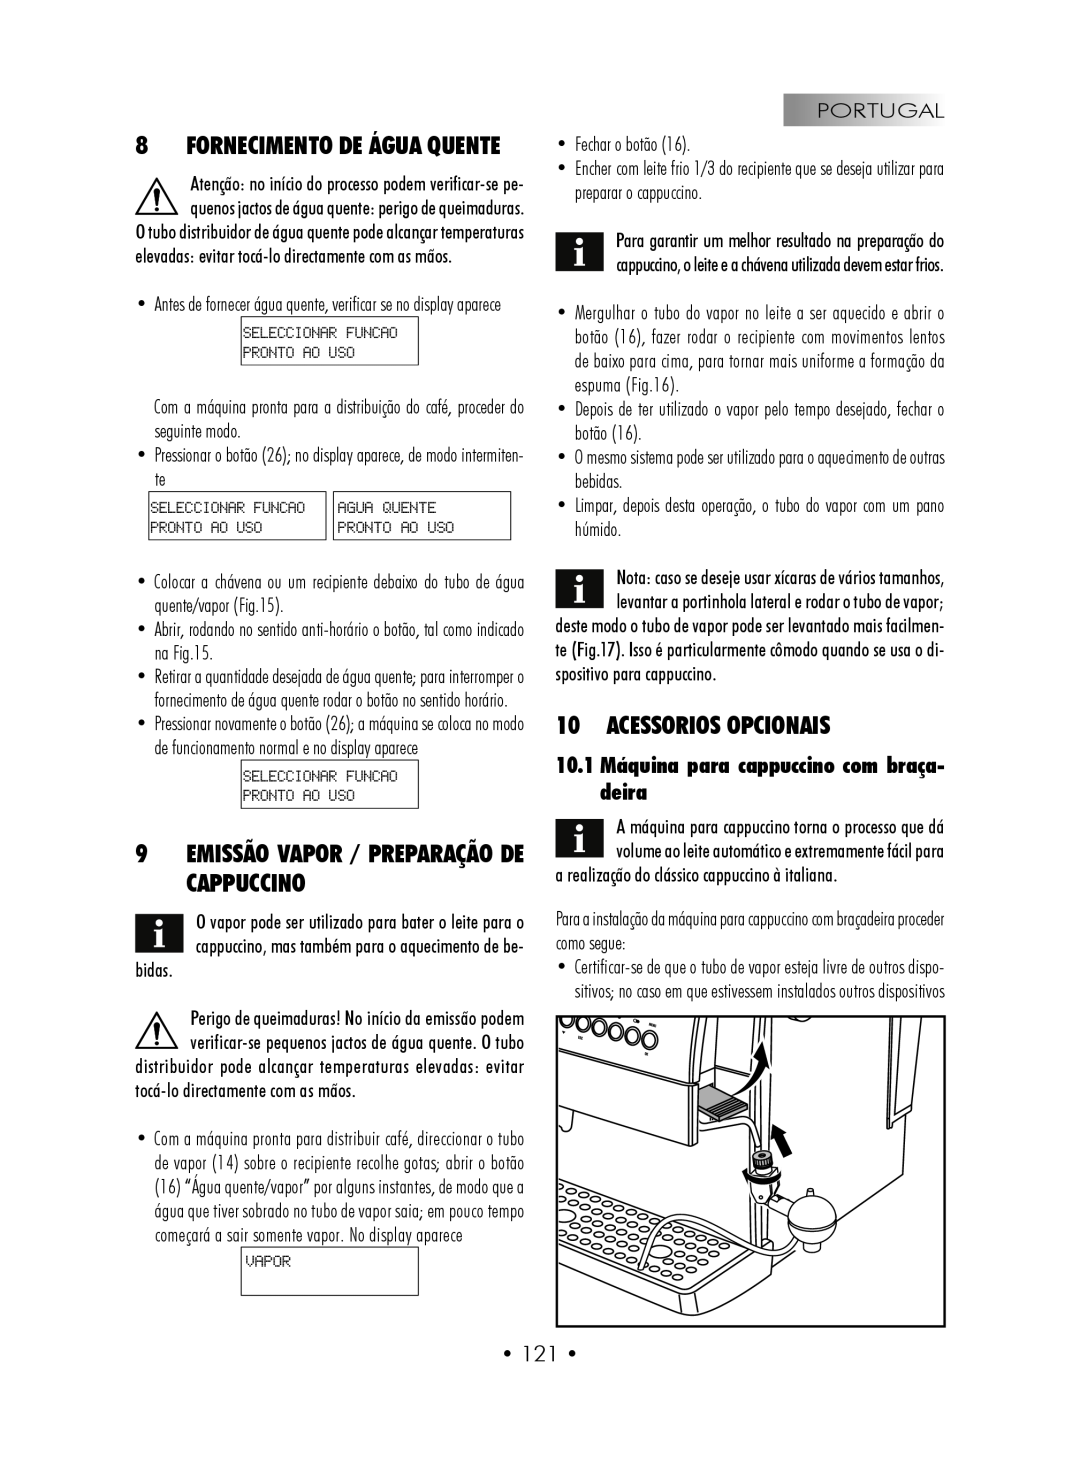 Gaggia SUP027YDR manual 9EMISSÃO VAPOR / Preparação de cappuccino, Acessorios opcionais, Fornecimento De Água Quente 